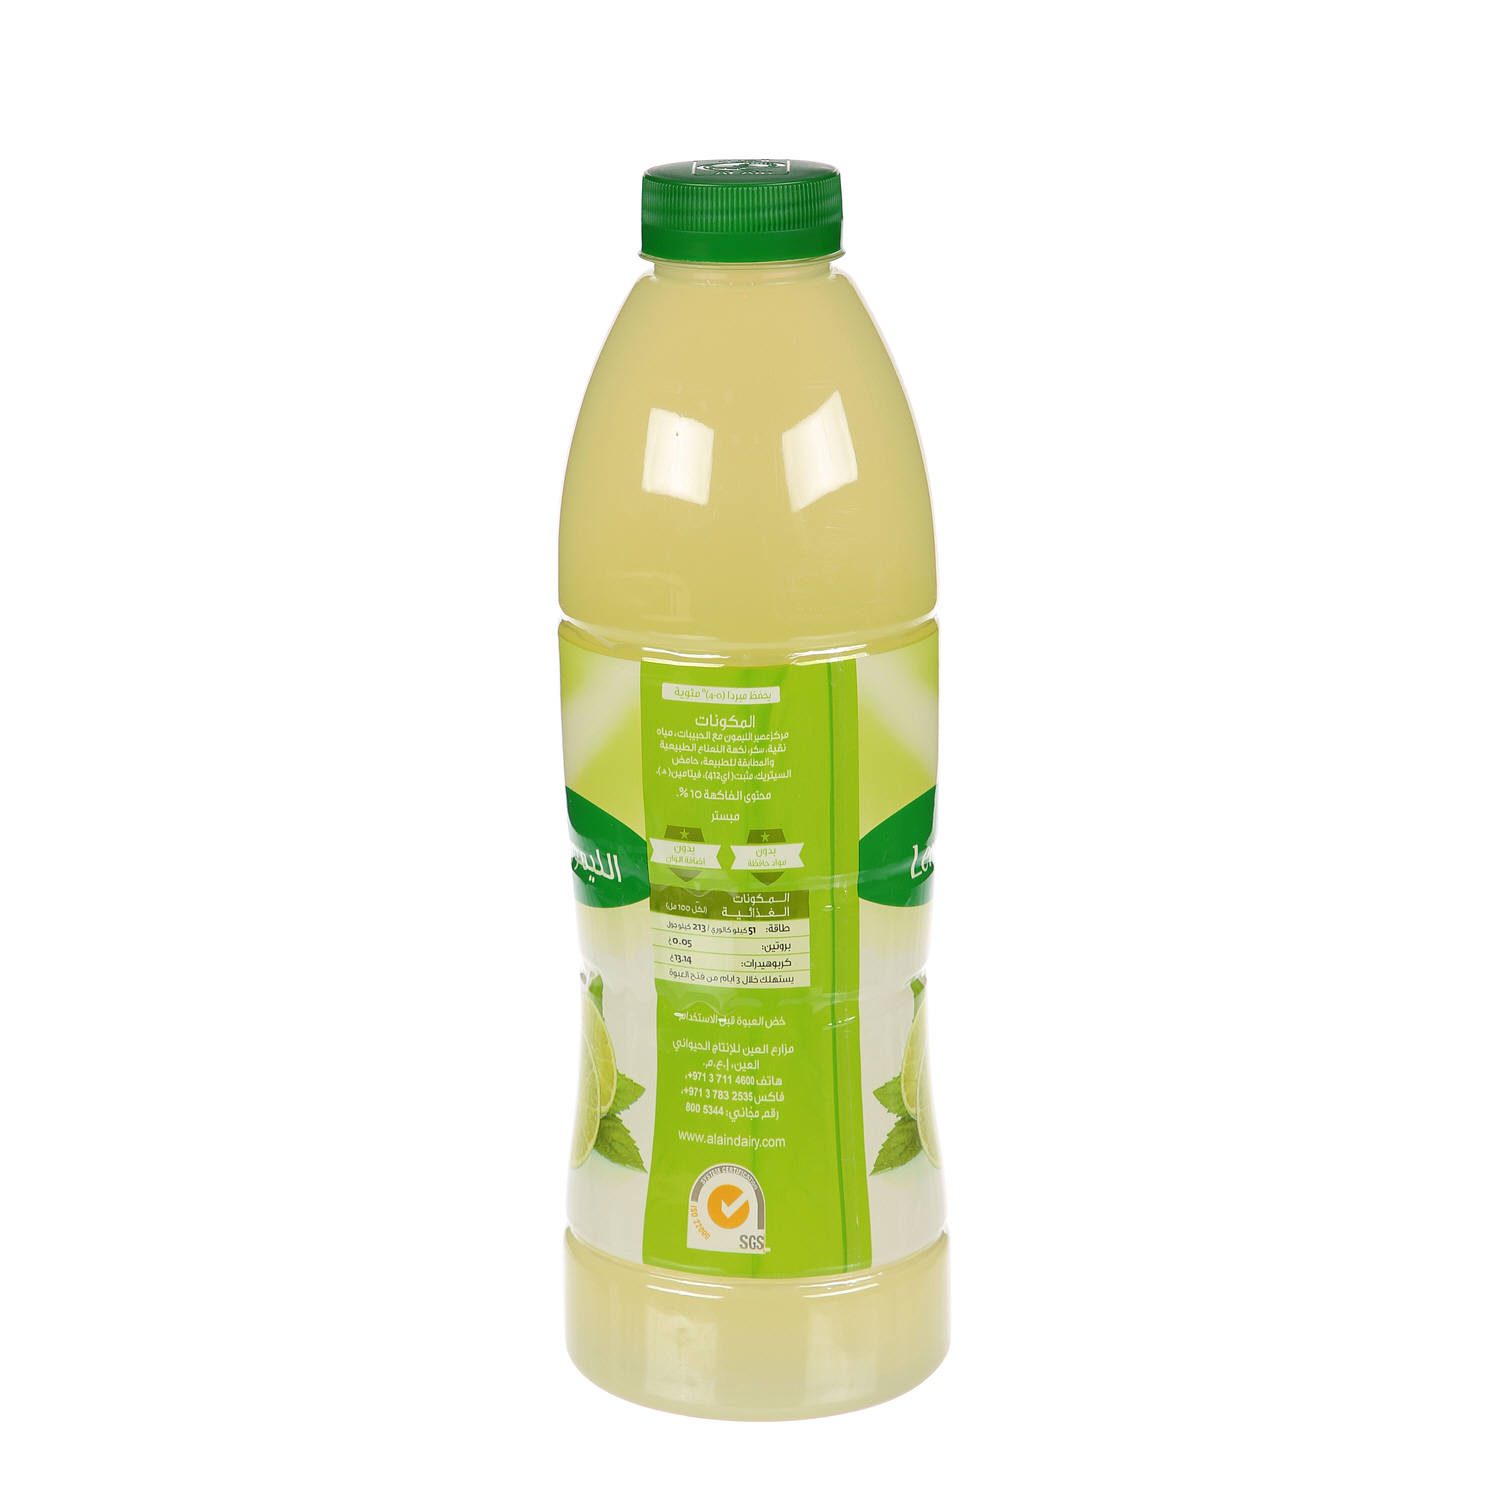 Al Ain Lemon Mint Drink 1 Ltr